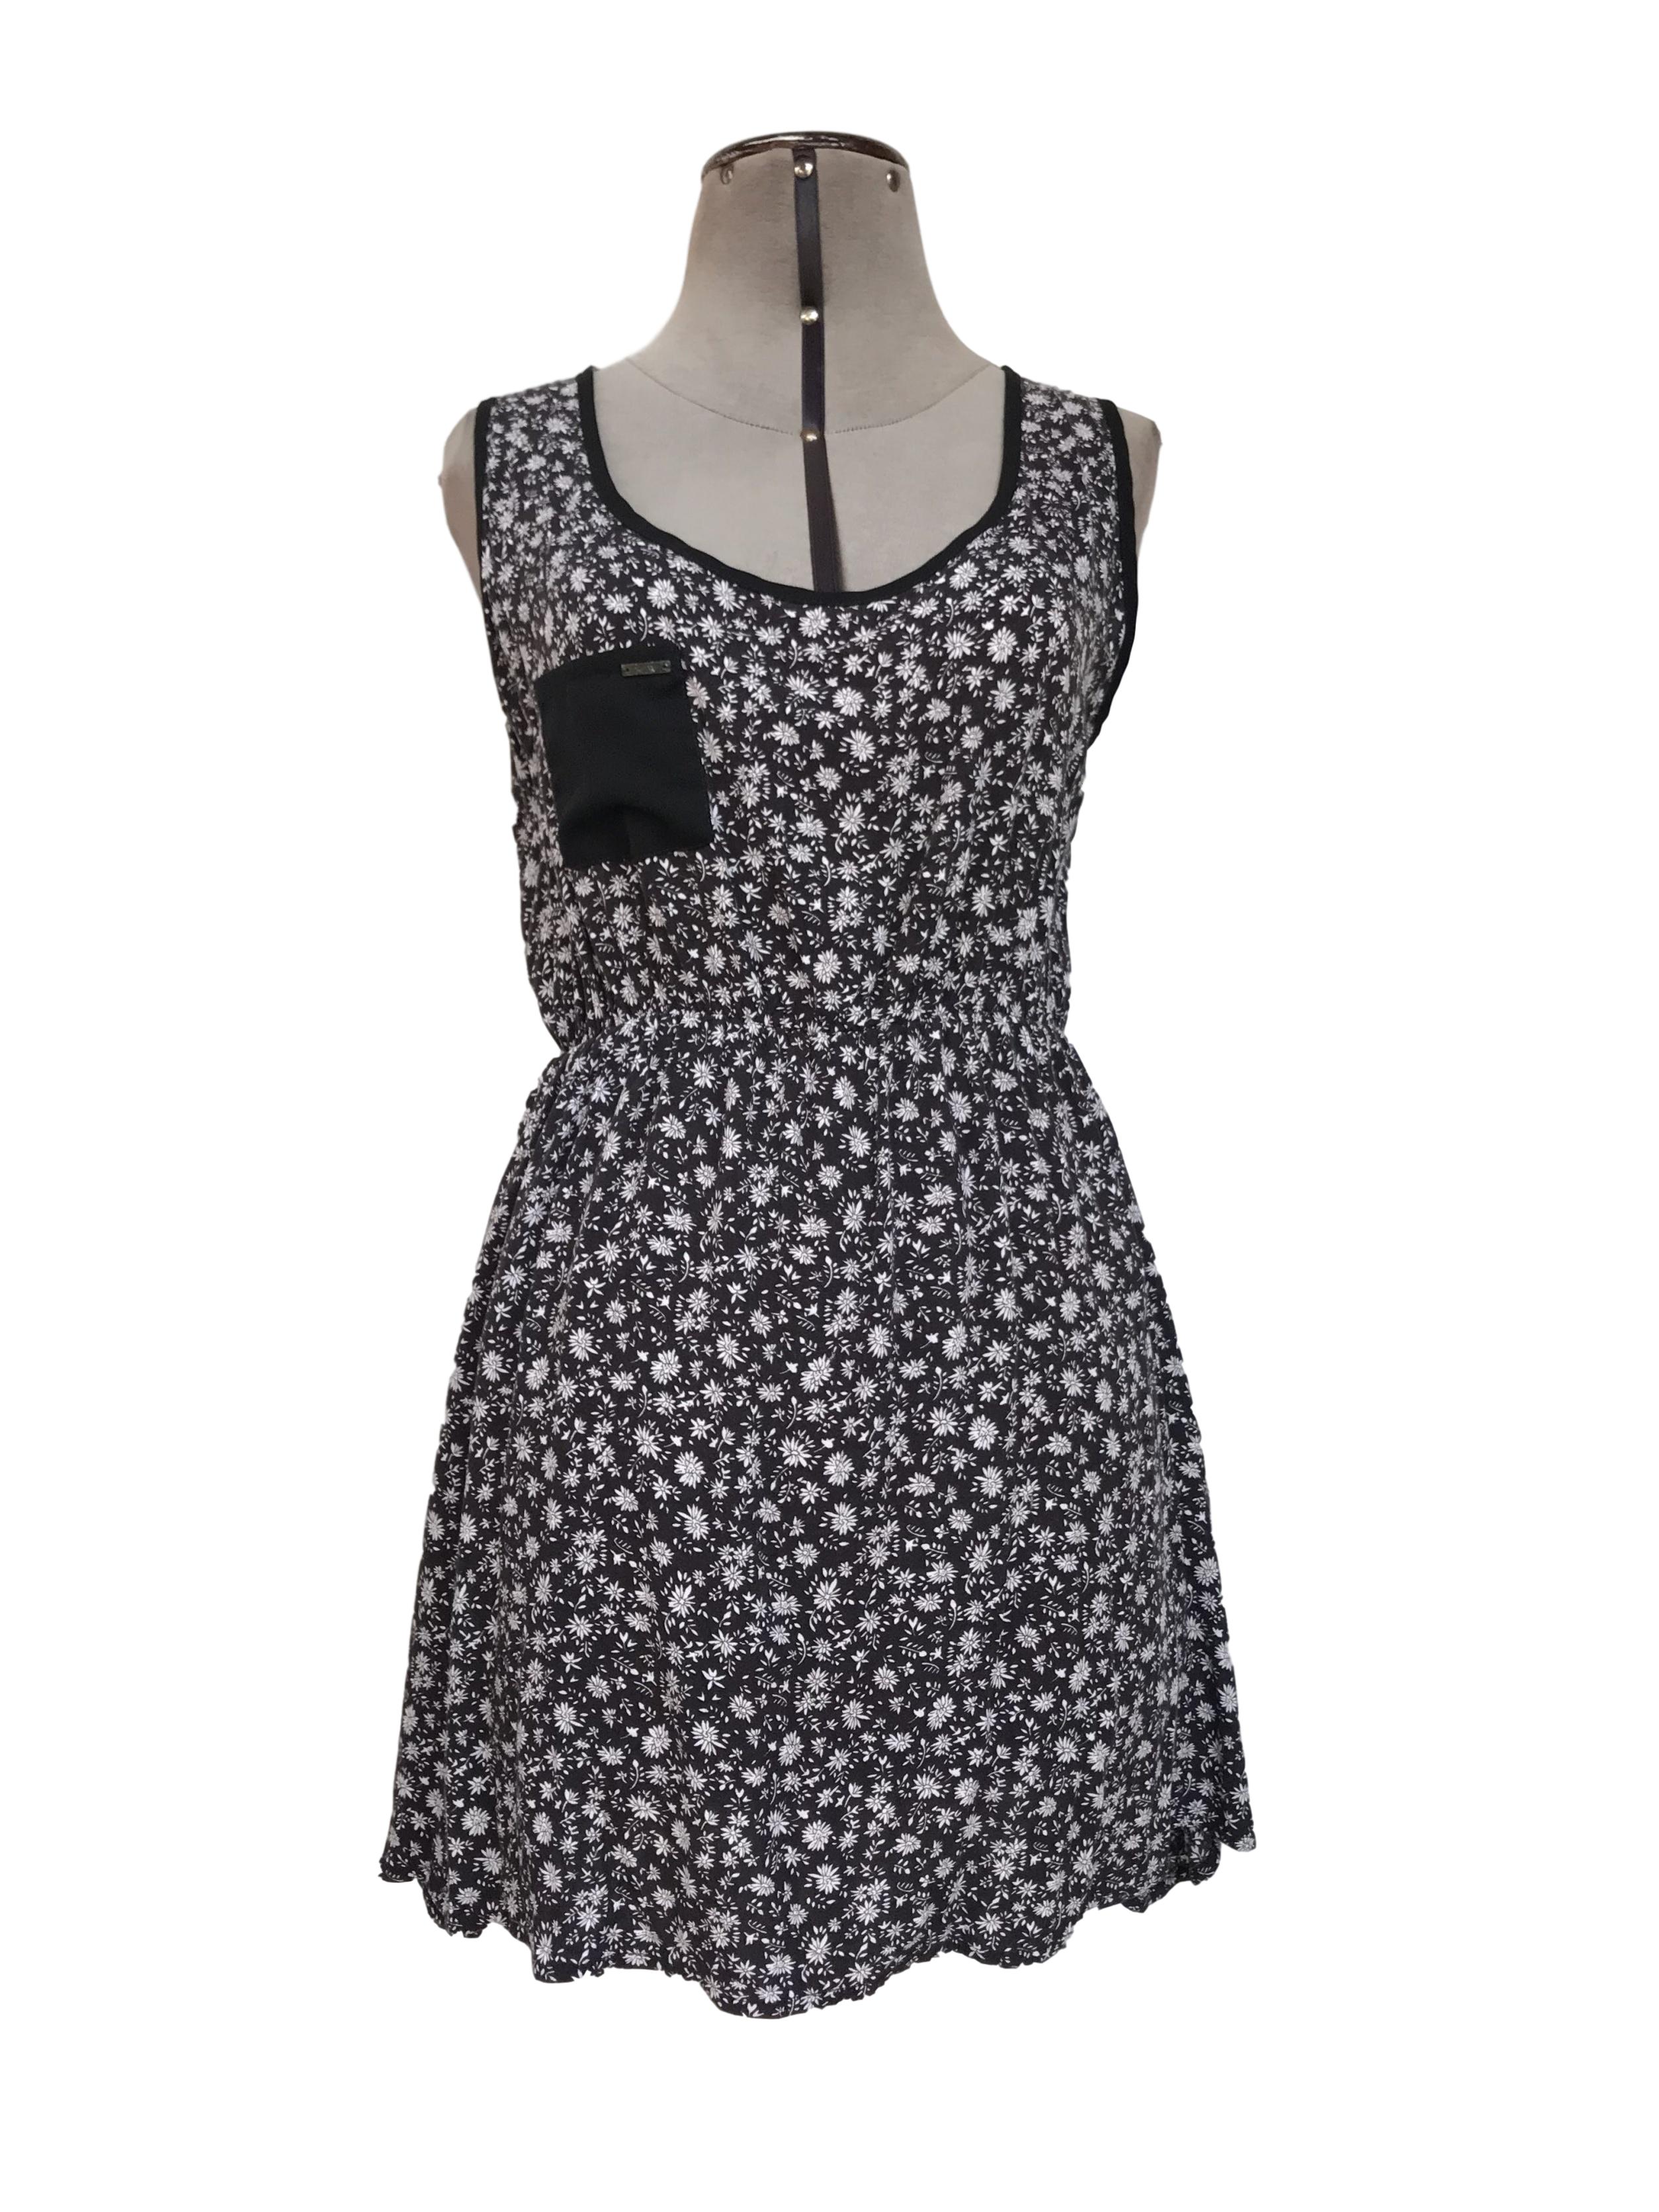 Vestido mini Now, negro con estampado de flores blancas, espalda con tiras cruzadas, elástico a la cintura, tela fresca
Talla S